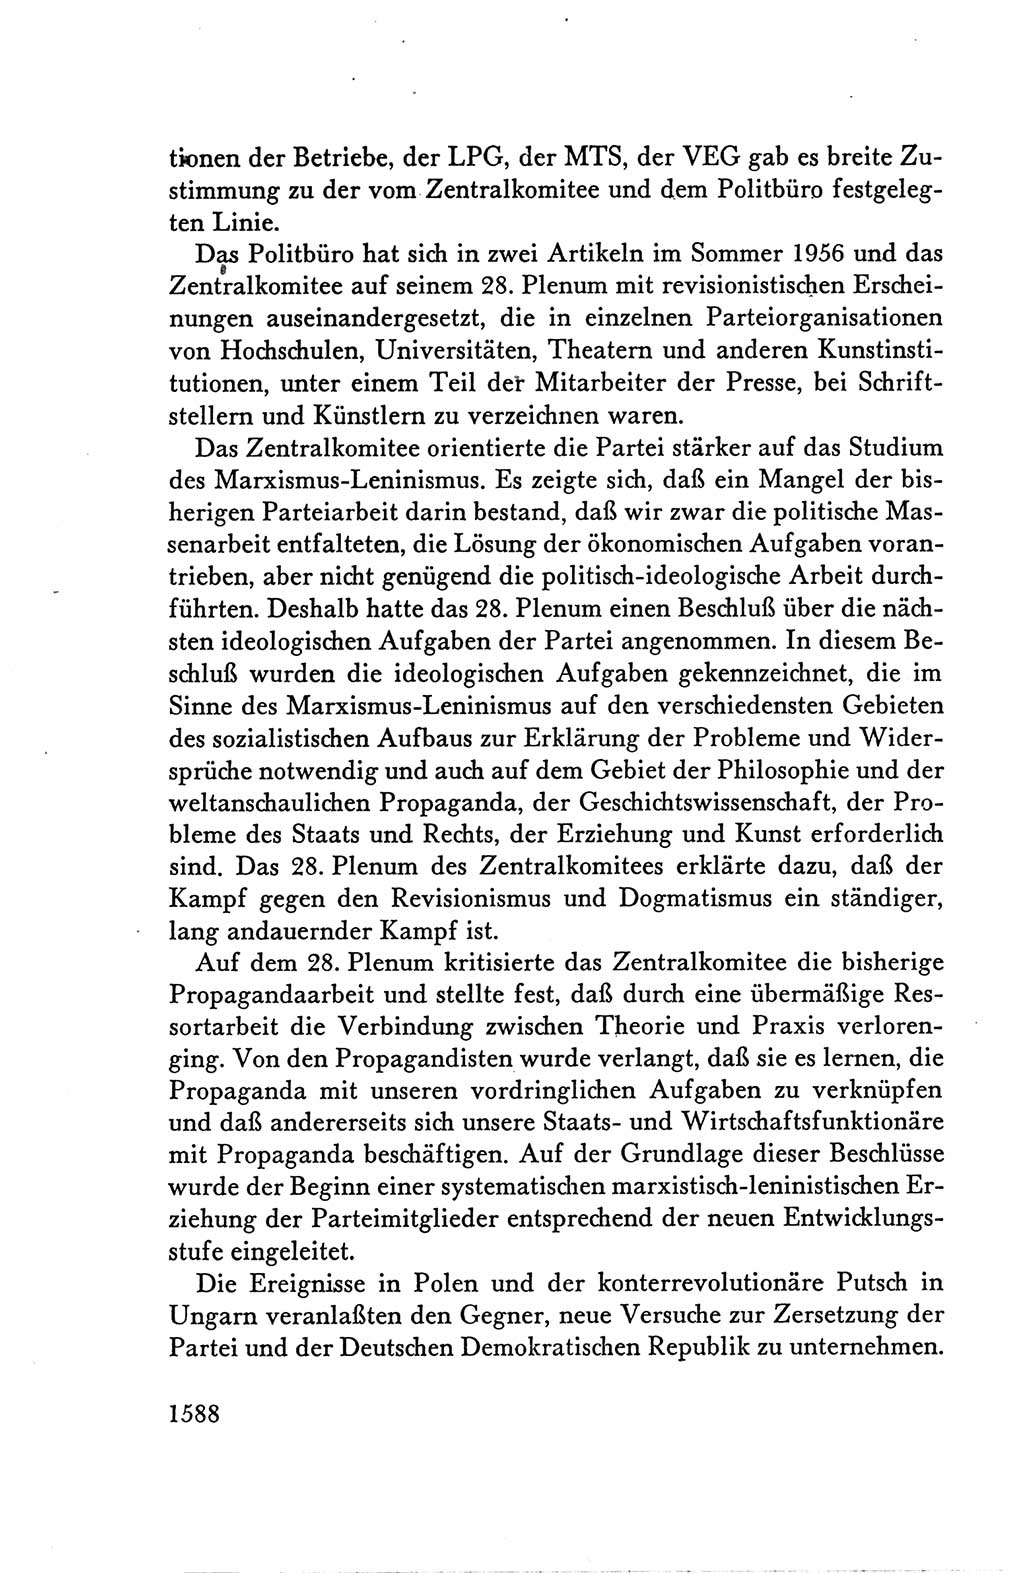 Protokoll der Verhandlungen des Ⅴ. Parteitages der Sozialistischen Einheitspartei Deutschlands (SED) [Deutsche Demokratische Republik (DDR)] 1958, Seite 1588